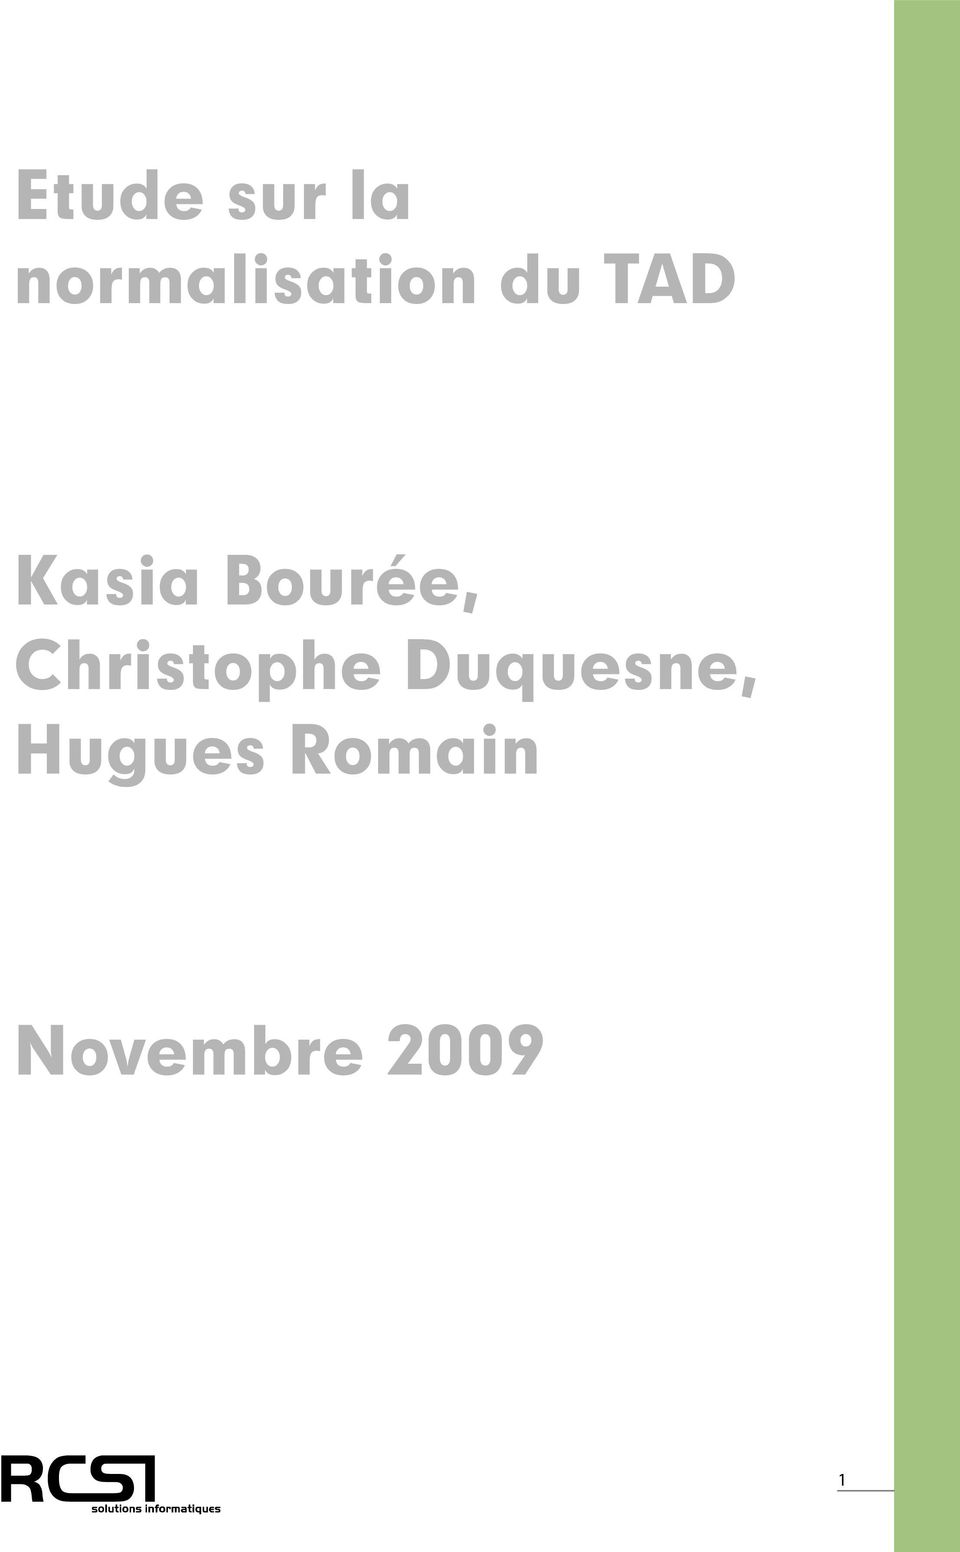 Kasia Bourée, Christophe